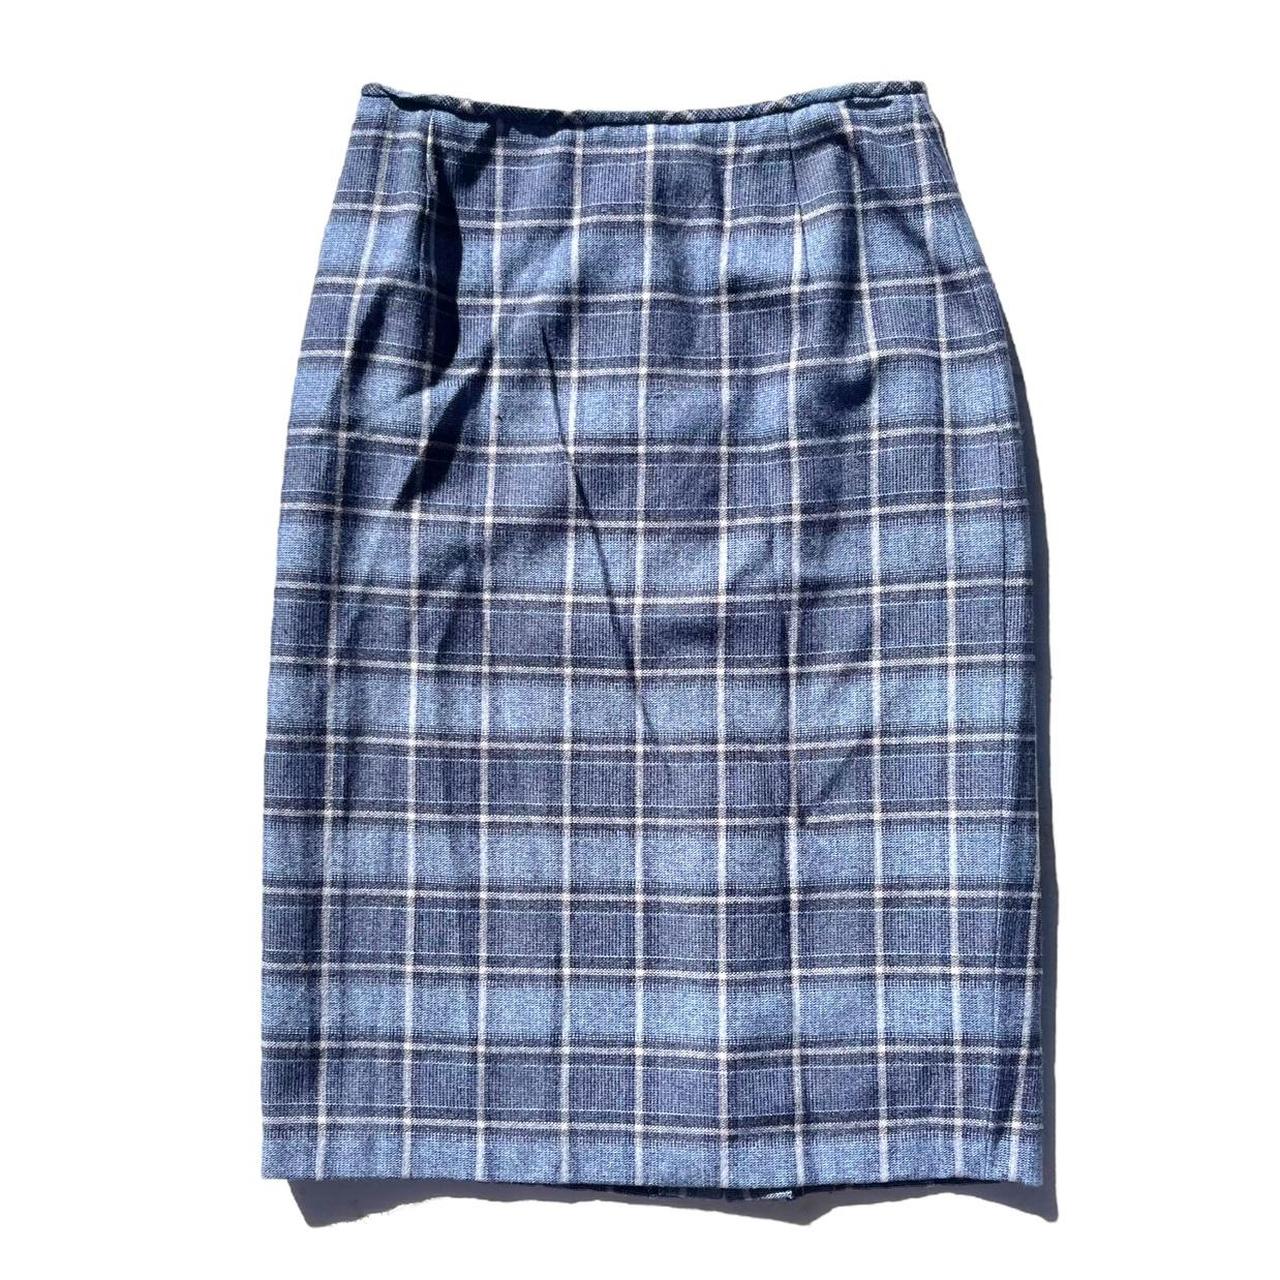 vintage y2k blue tartan plaid check midi skirt 🤍 no... - Depop